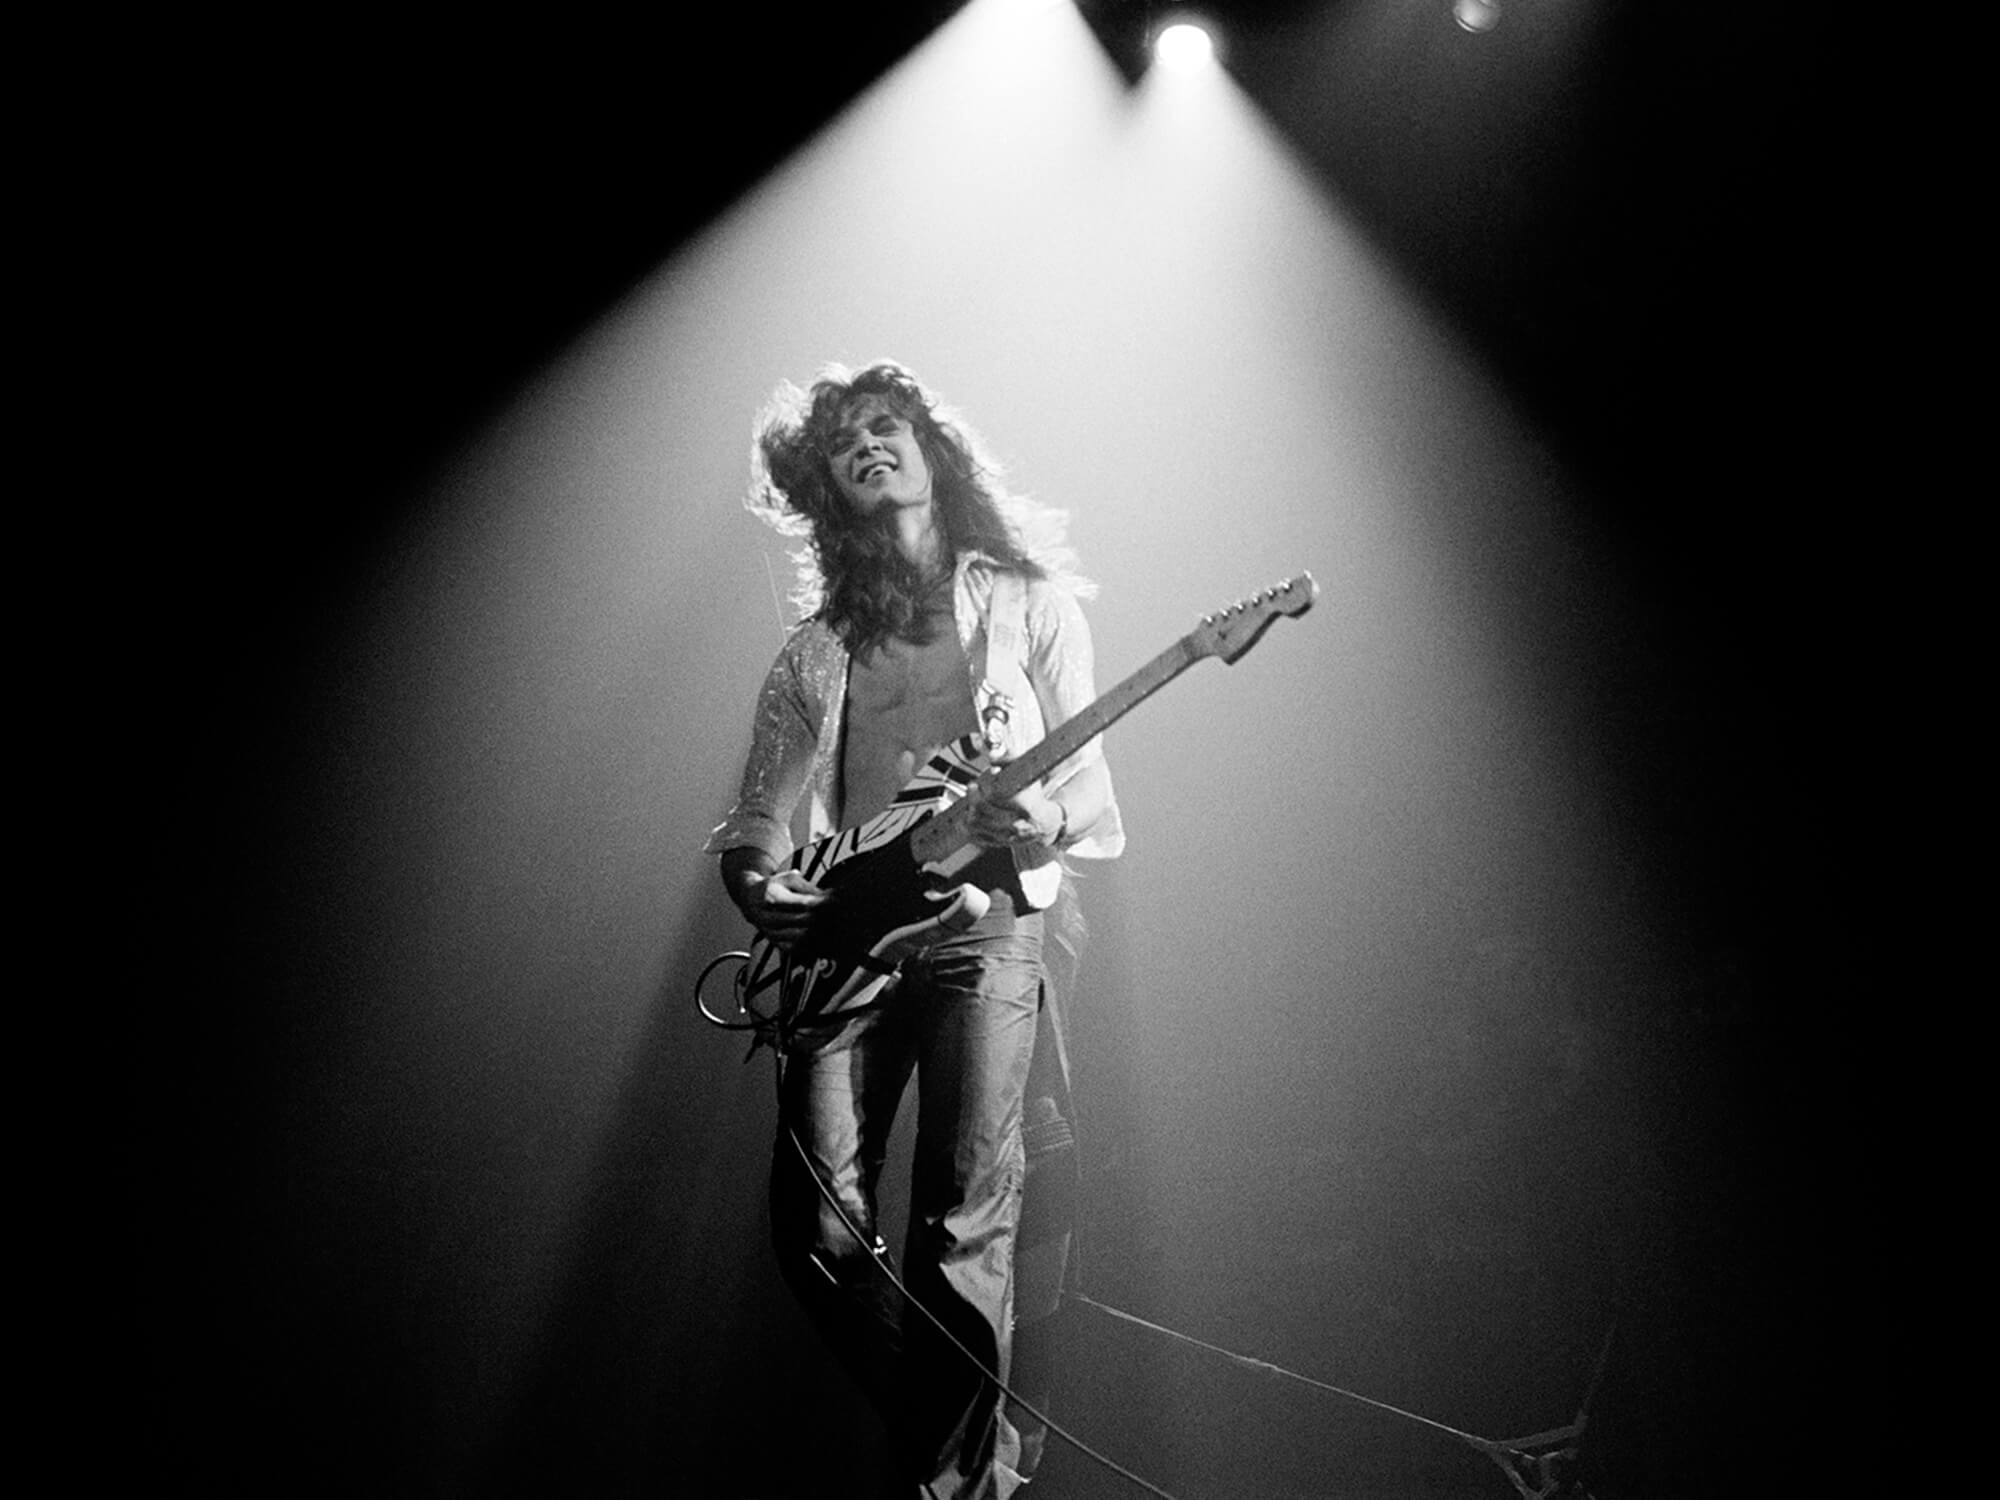 Eddie Van Halen performing in 1978, photo by Fin Costello/Redferns via Getty Images